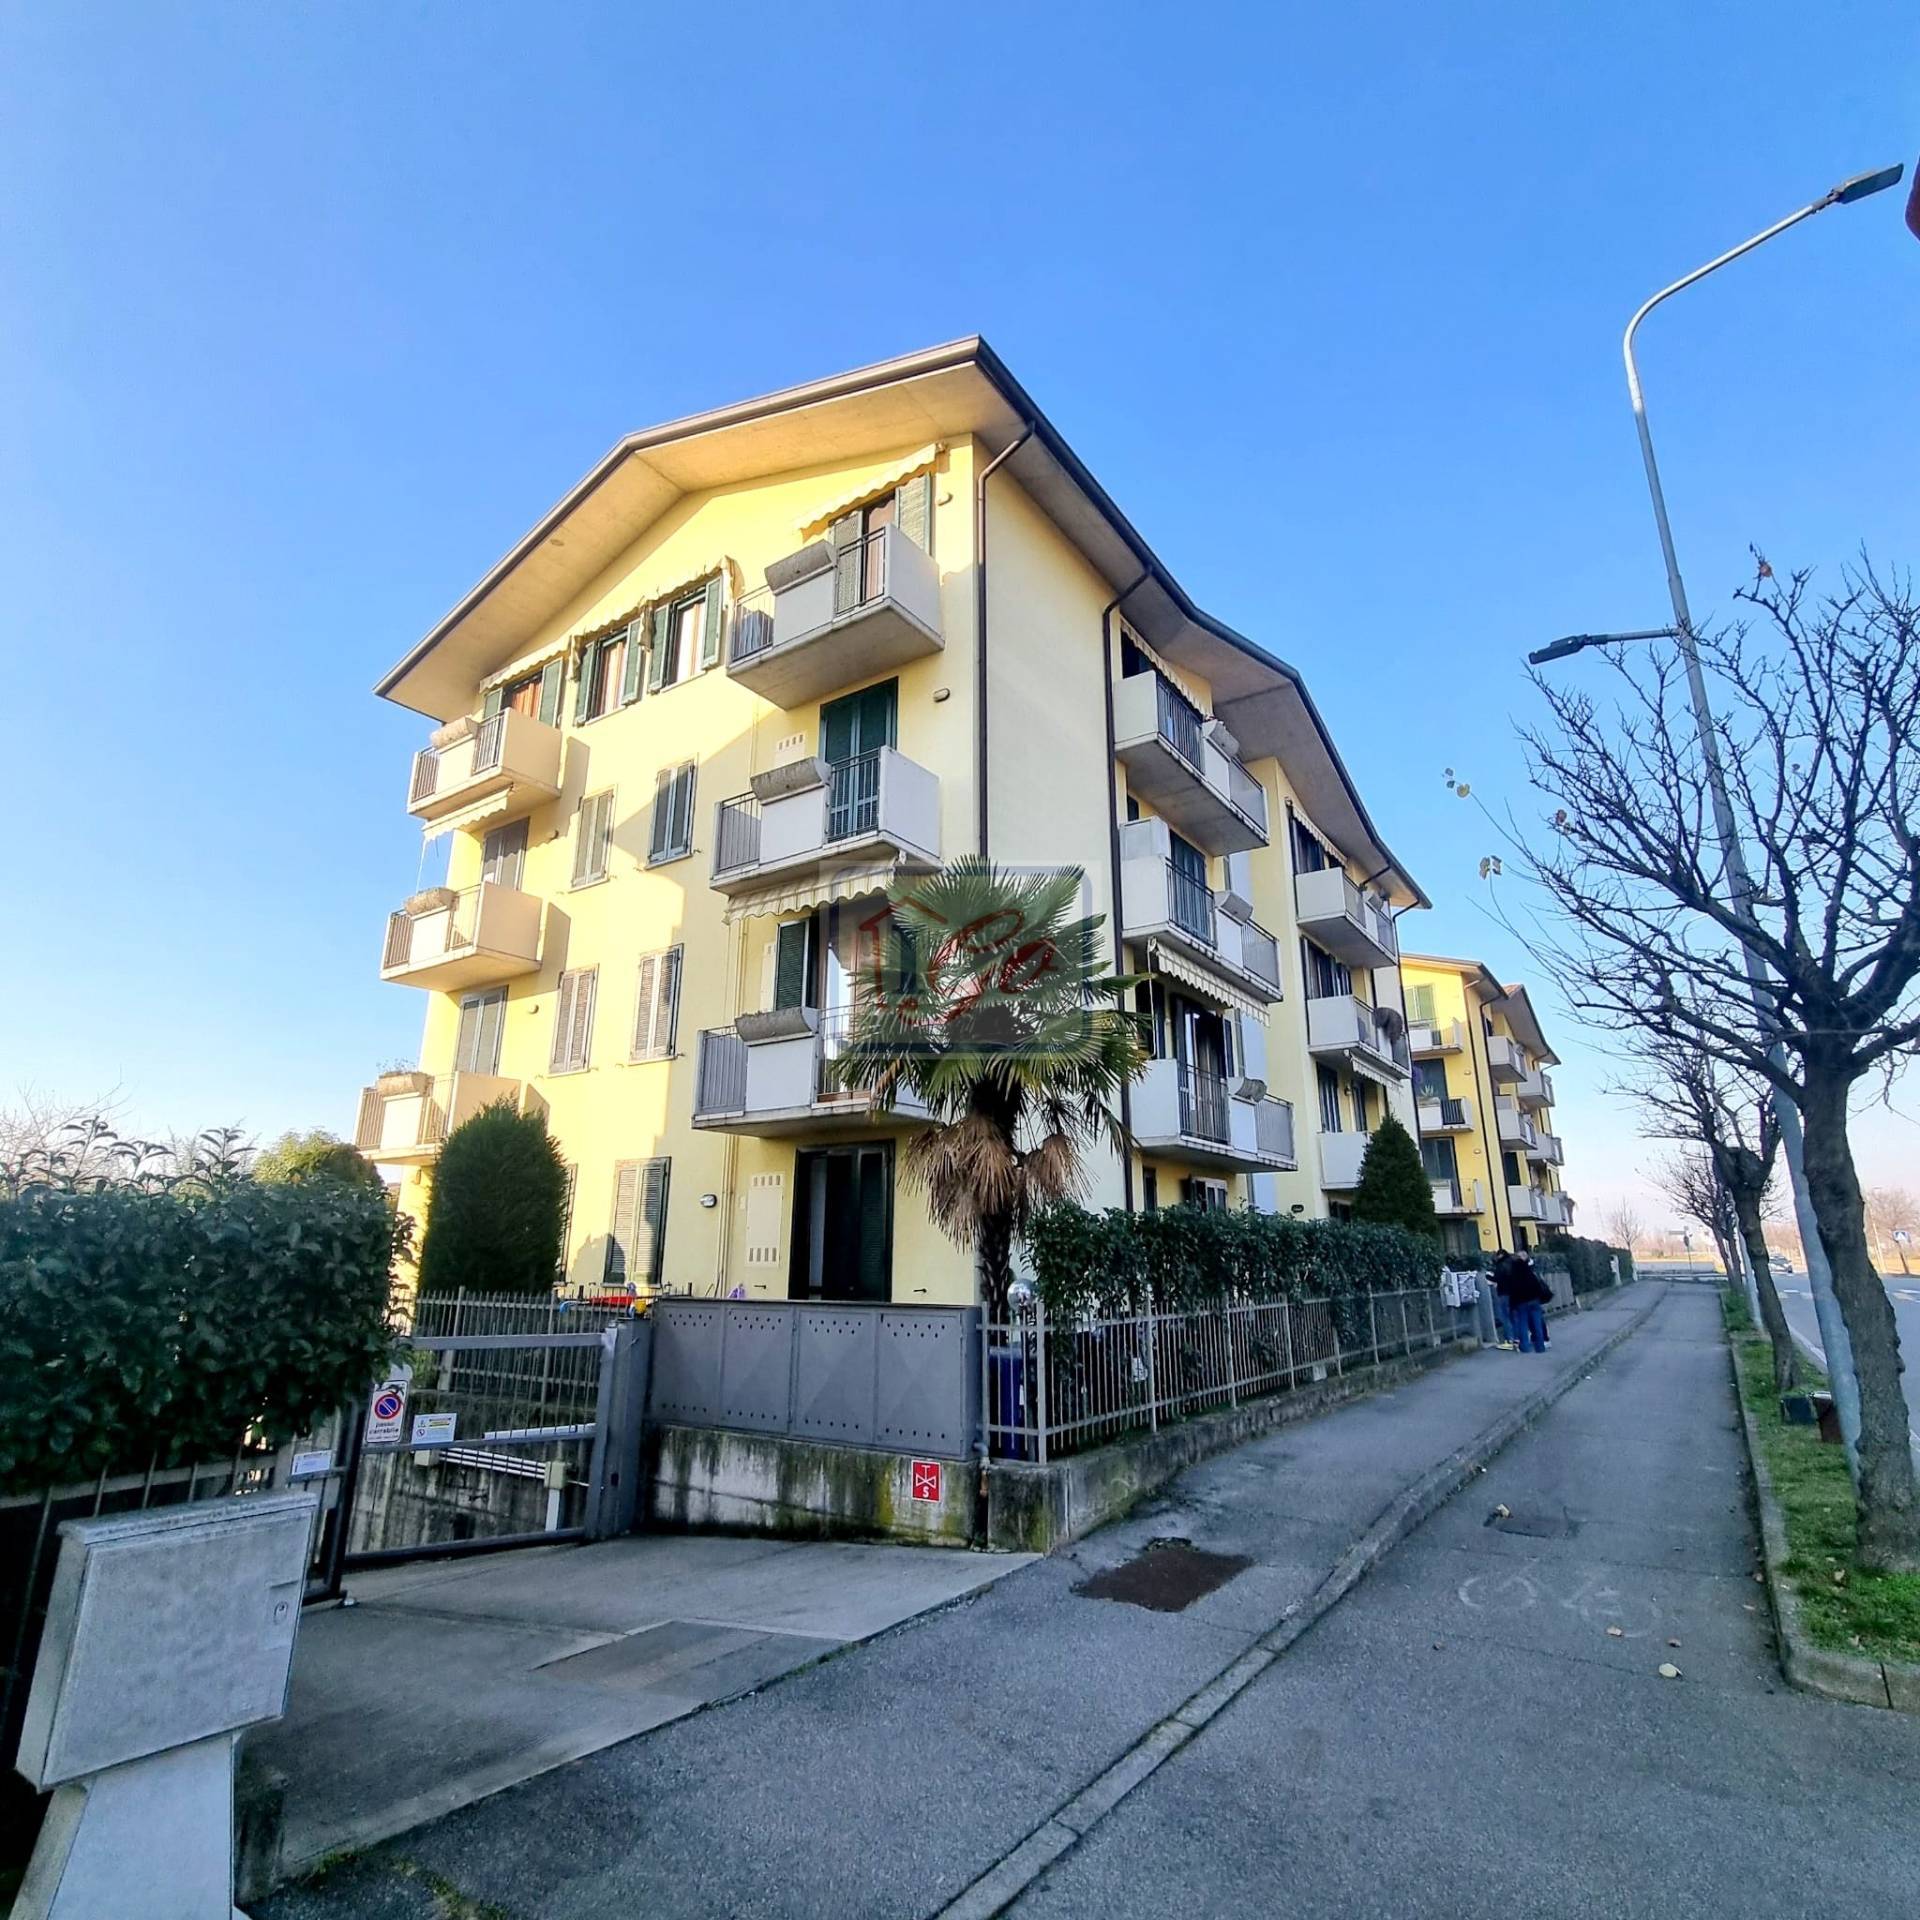 Appartamento in vendita a Verdellino, 3 locali, prezzo € 170.000 | PortaleAgenzieImmobiliari.it